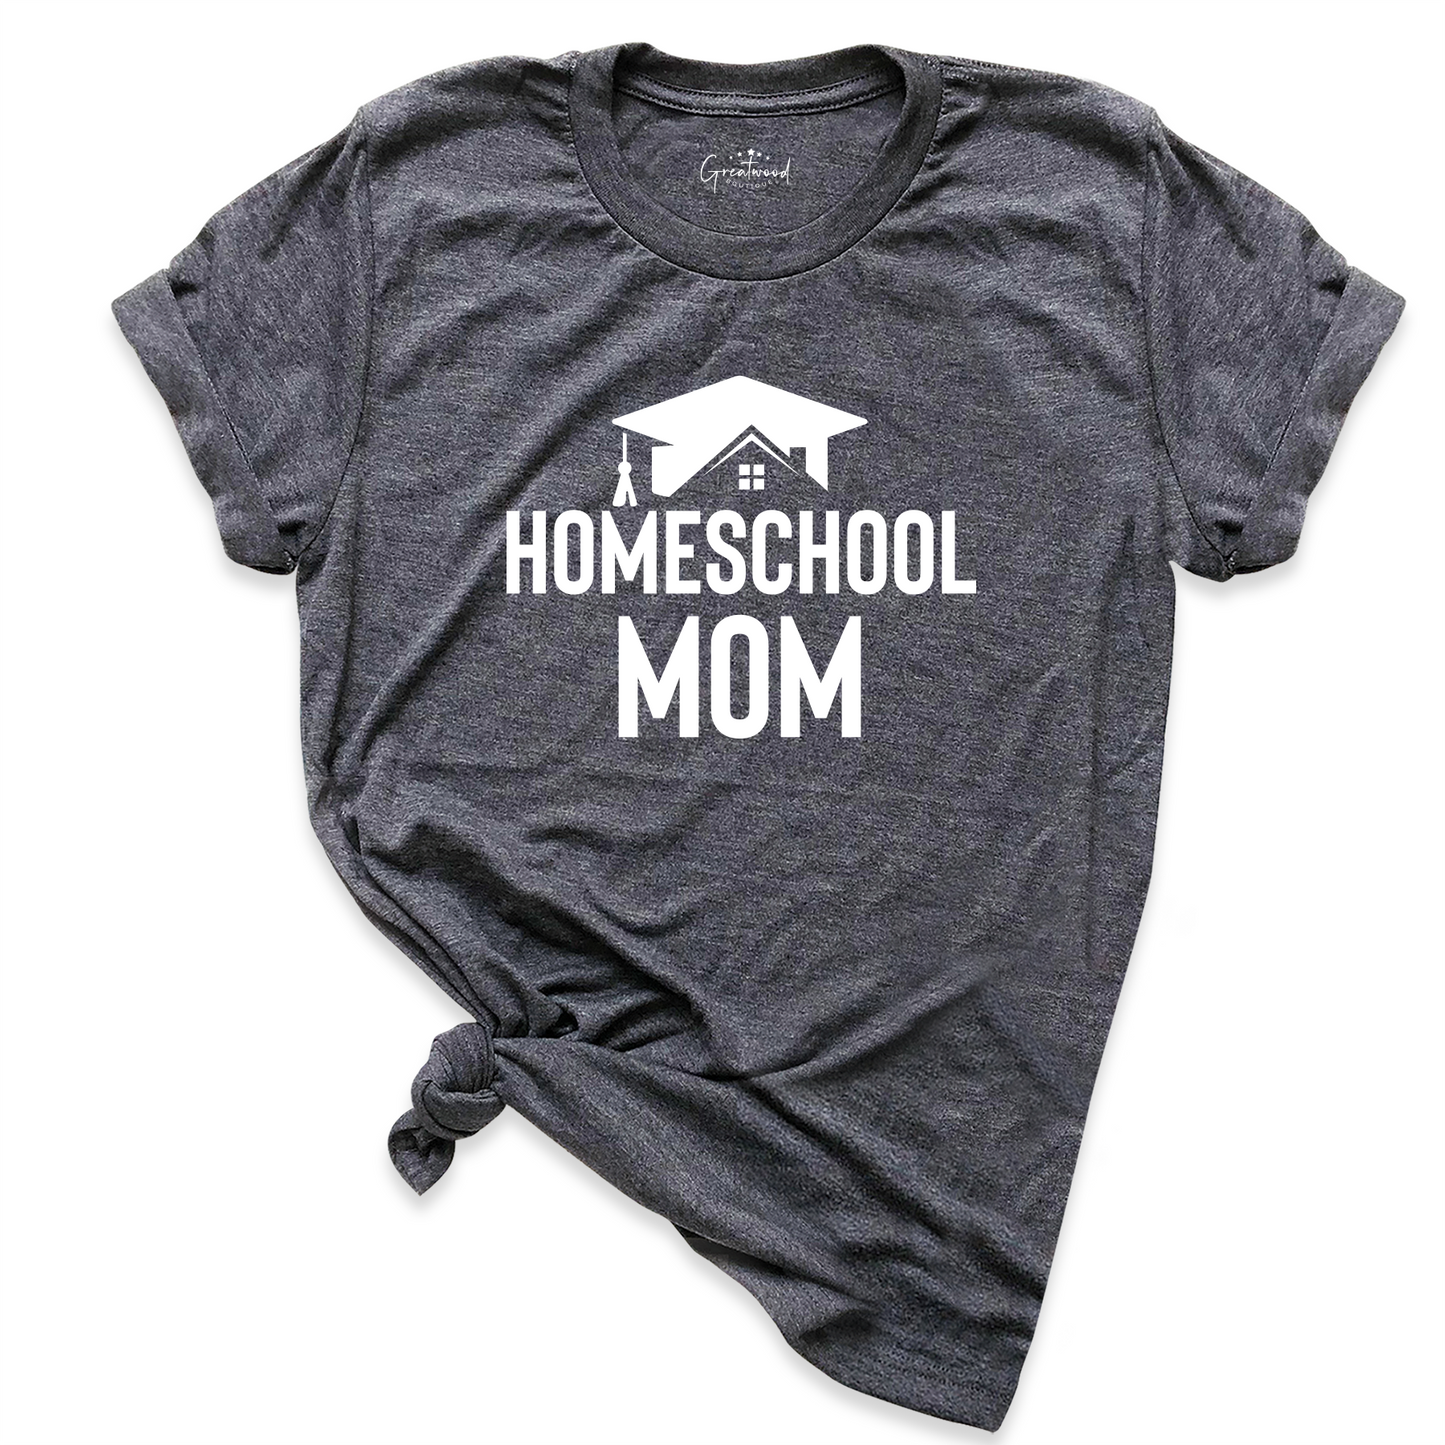 Homeschool Mom Shirt